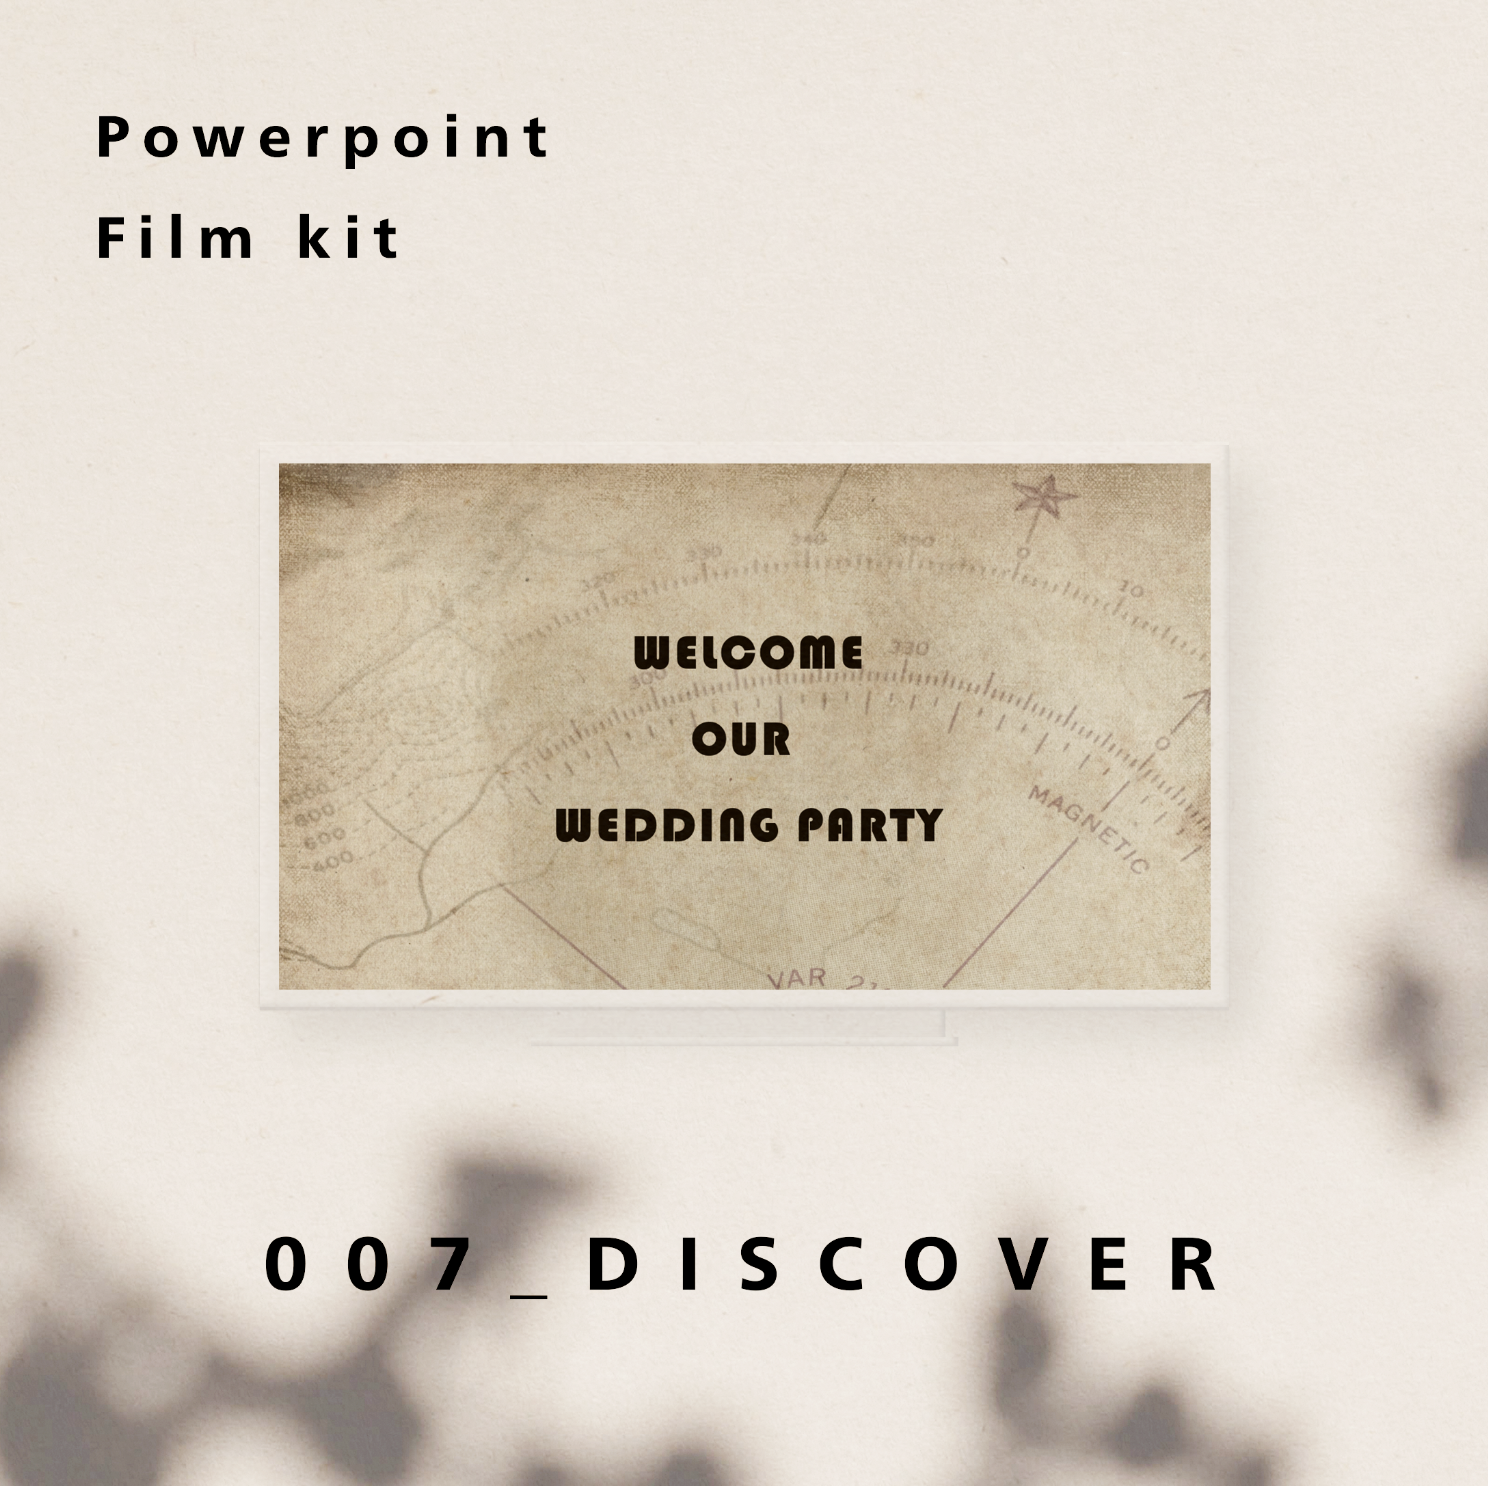 フィルムキット 007 Discover プロフィールムービー エンドロールムービー自作に Iichi ハンドメイド クラフト作品 手仕事品の通販